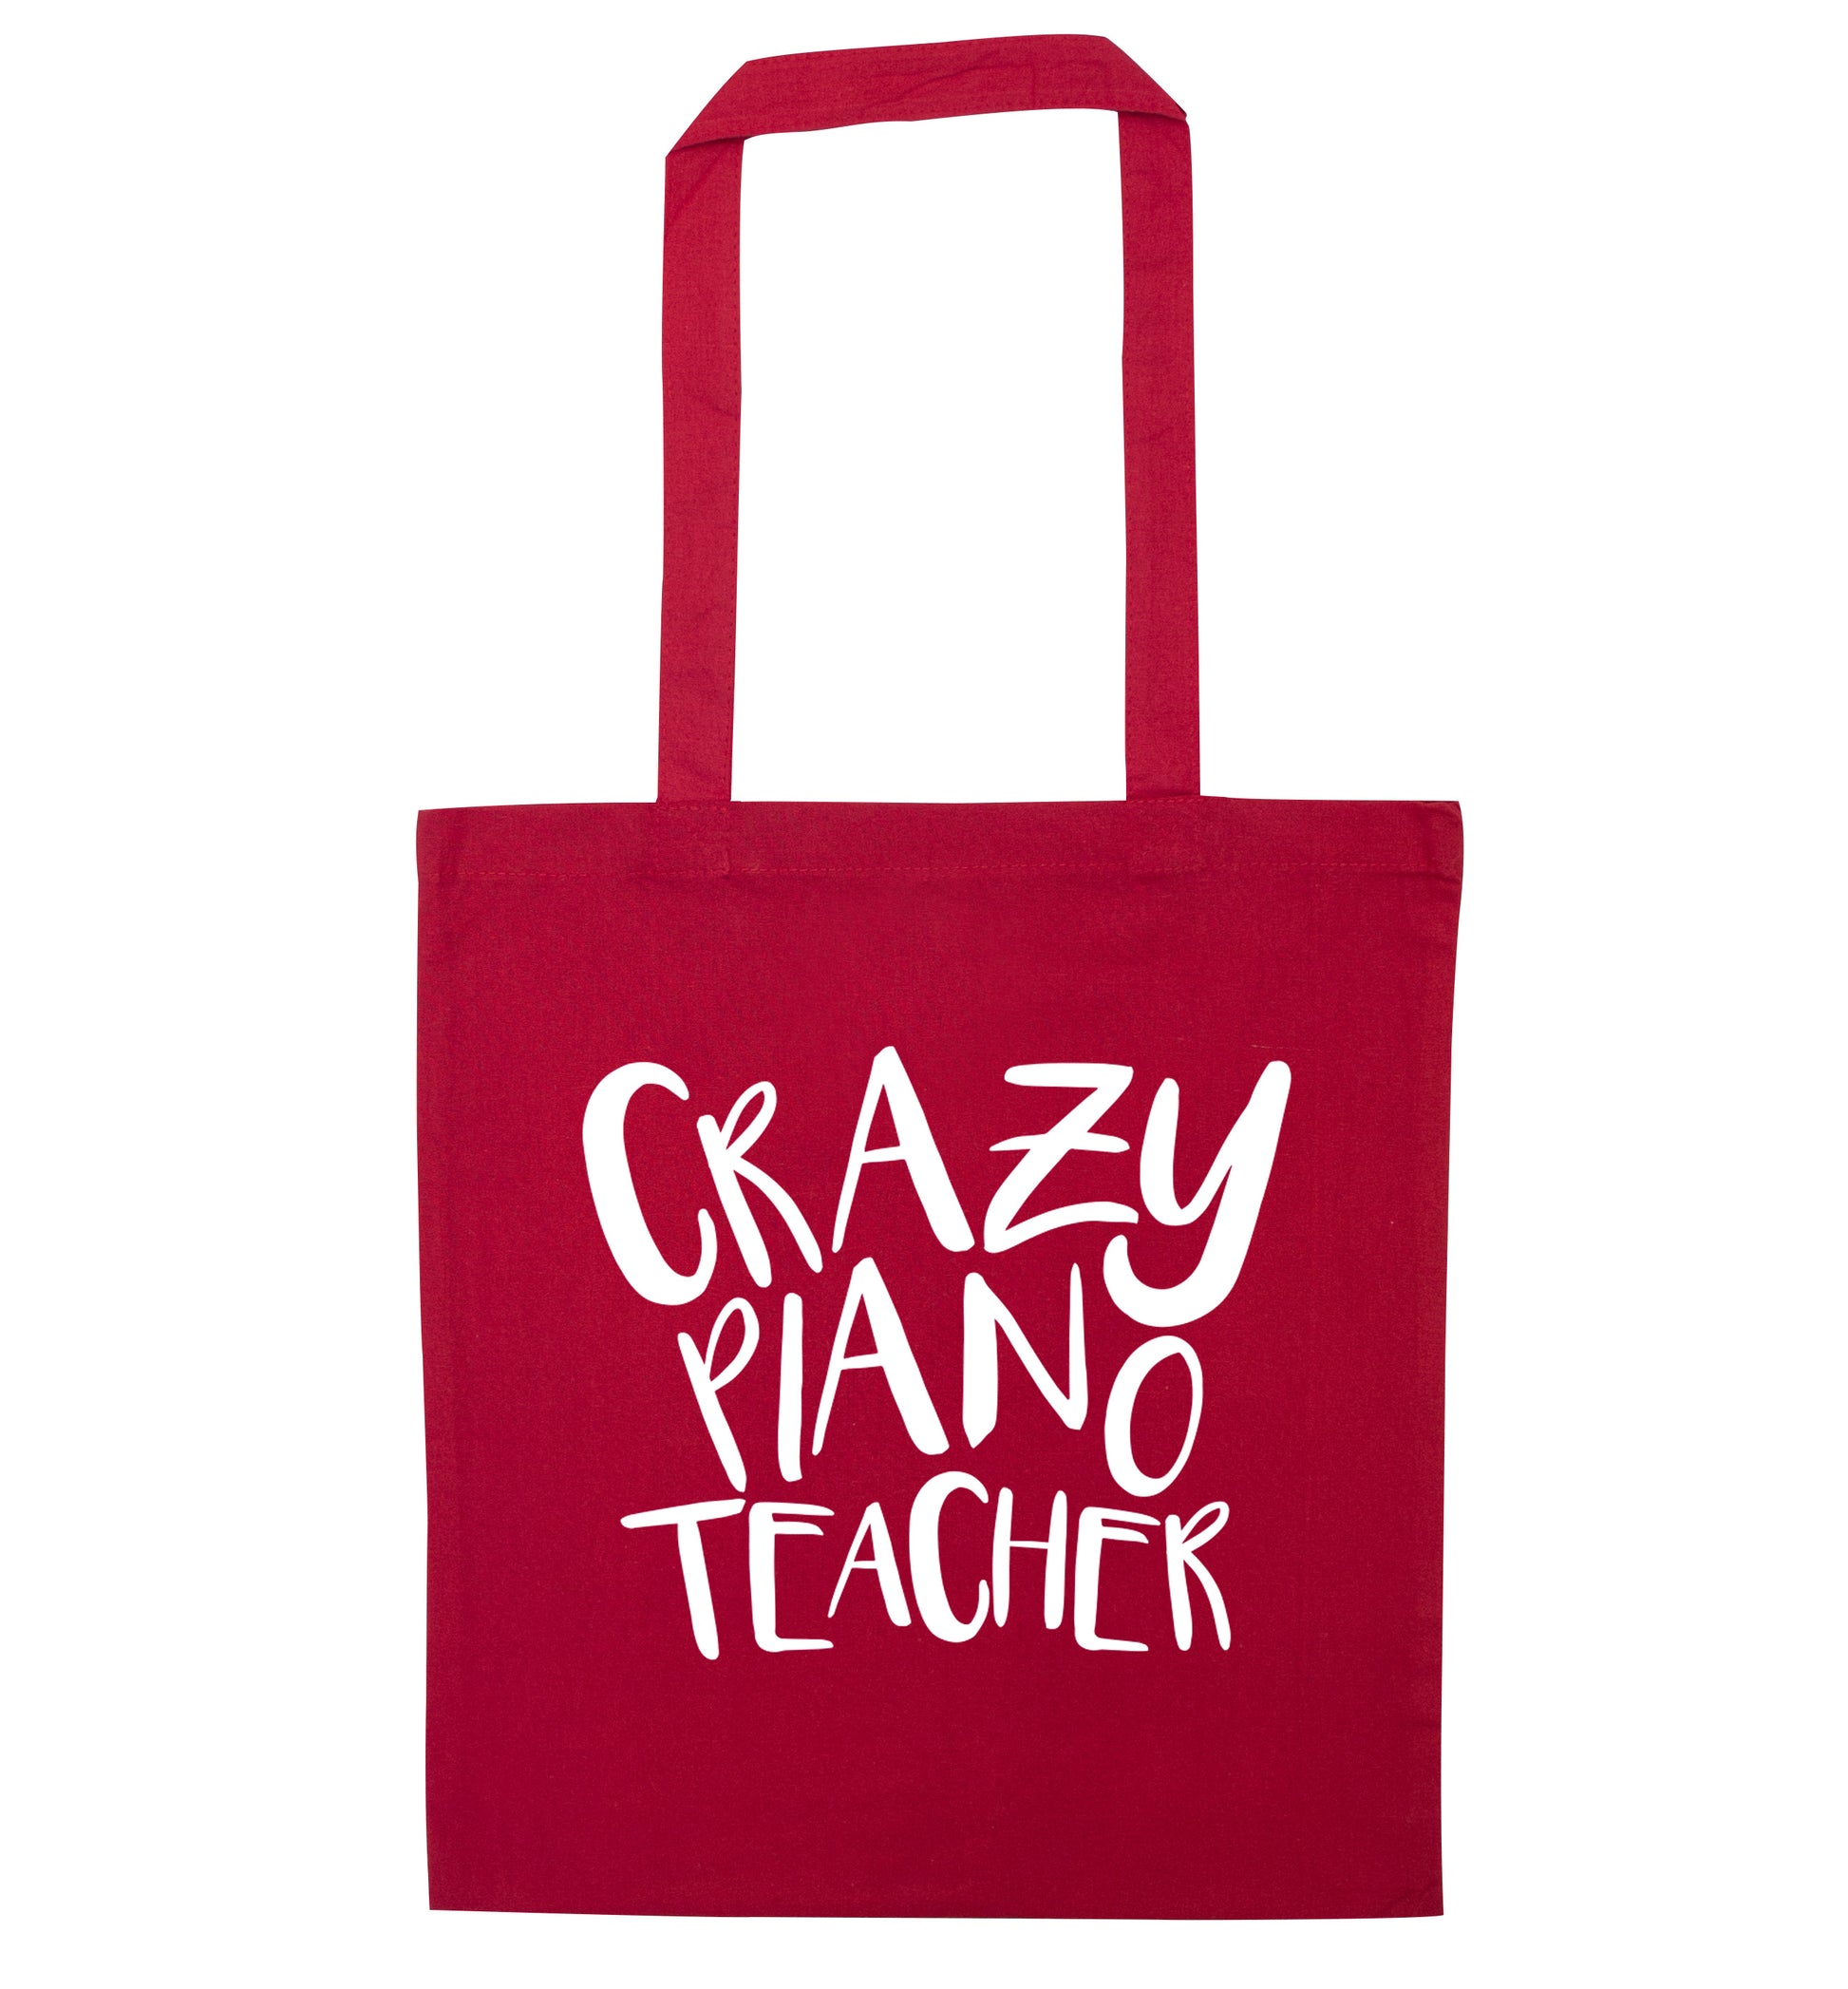 Crazy piano teacher red tote bag